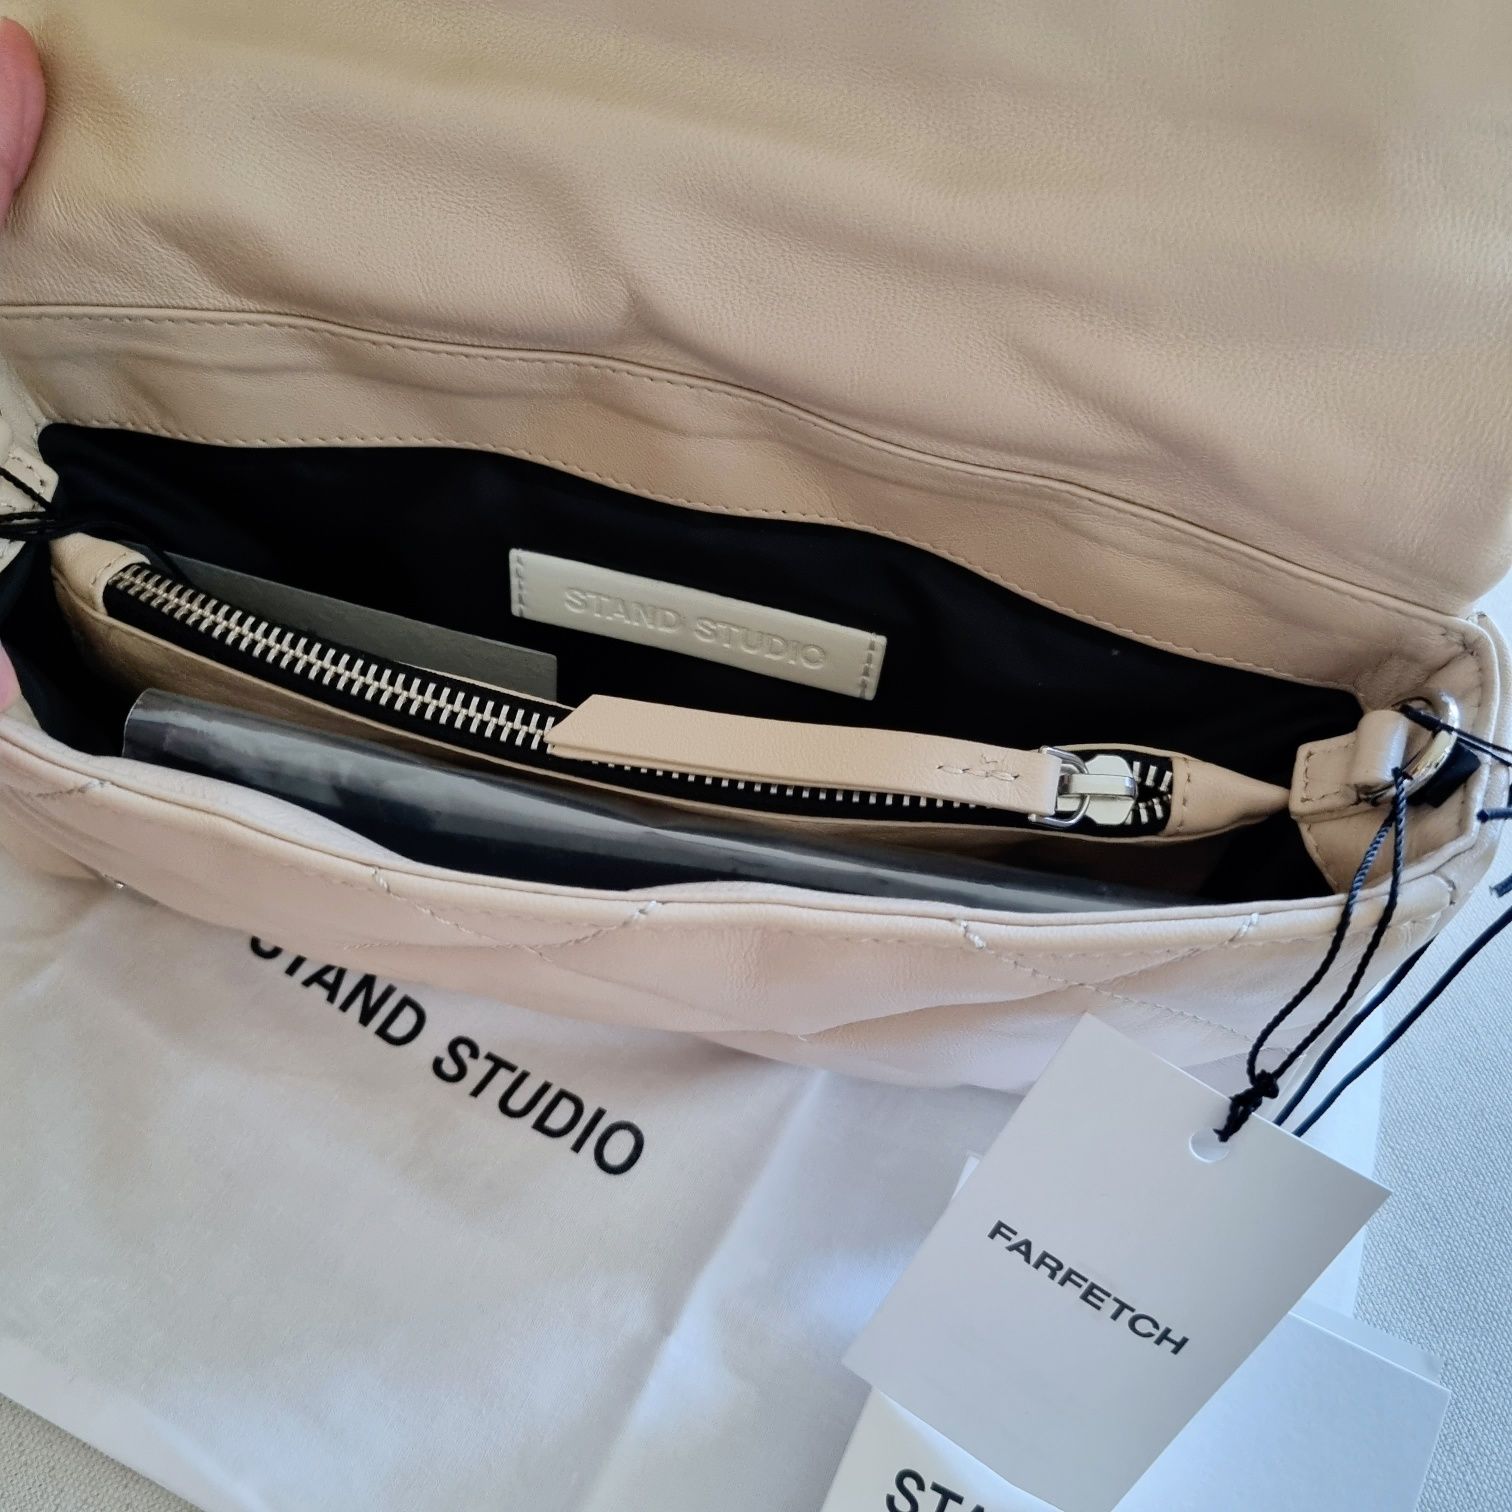 STAND STUDIO бежова/nude естествена кожа чанта дълга дръжка и синджир